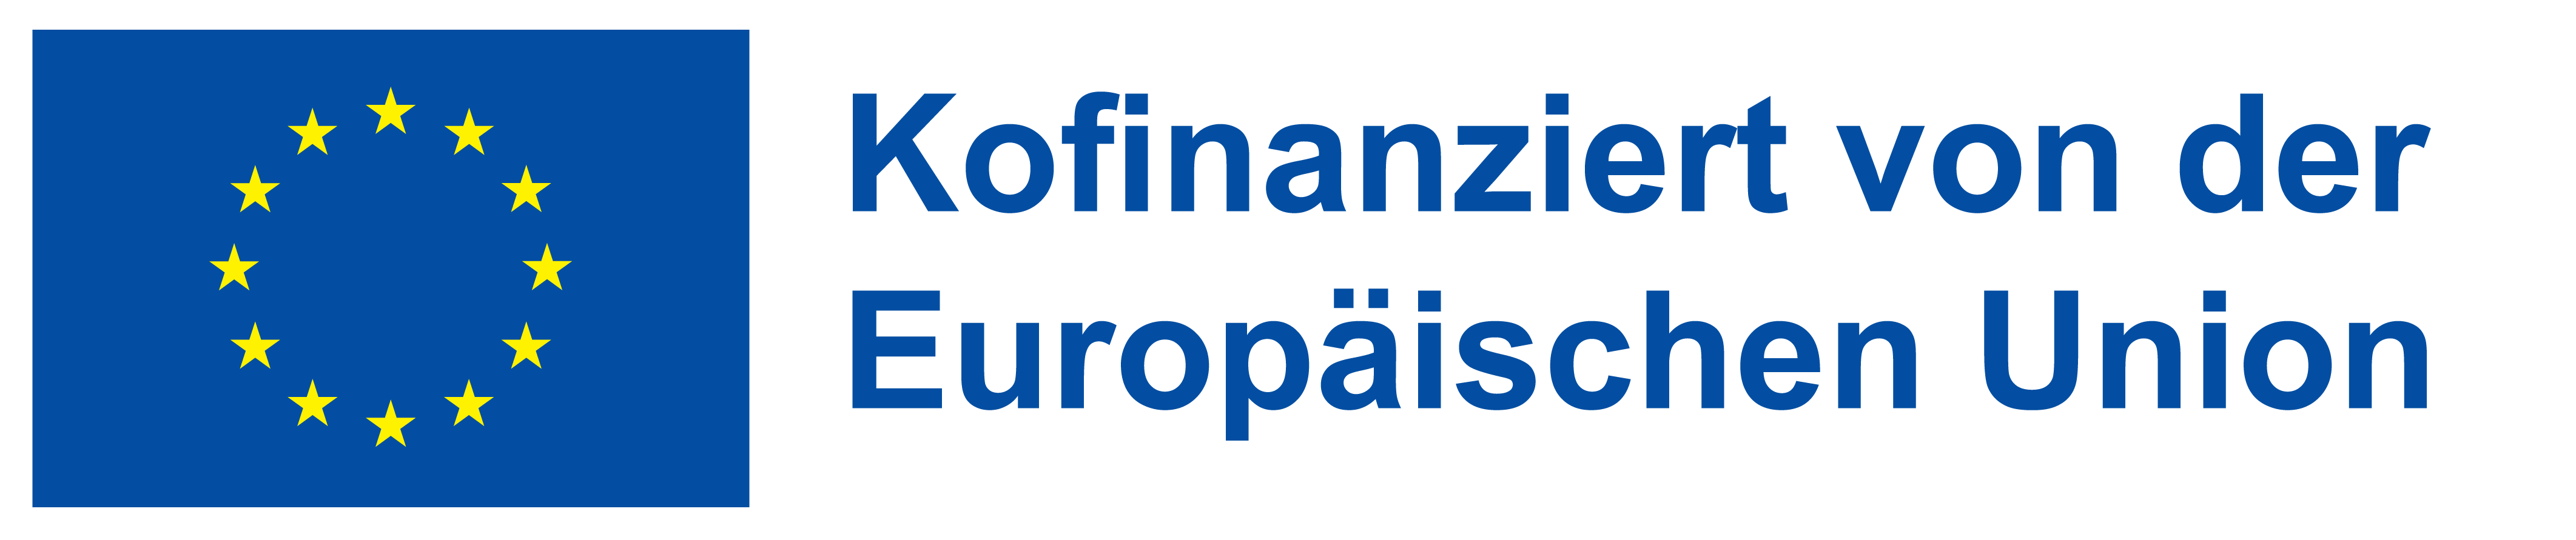 EU-Logo mit Kofinanziert-Schriftzug horizontal für helle Hintergründe im png-Format